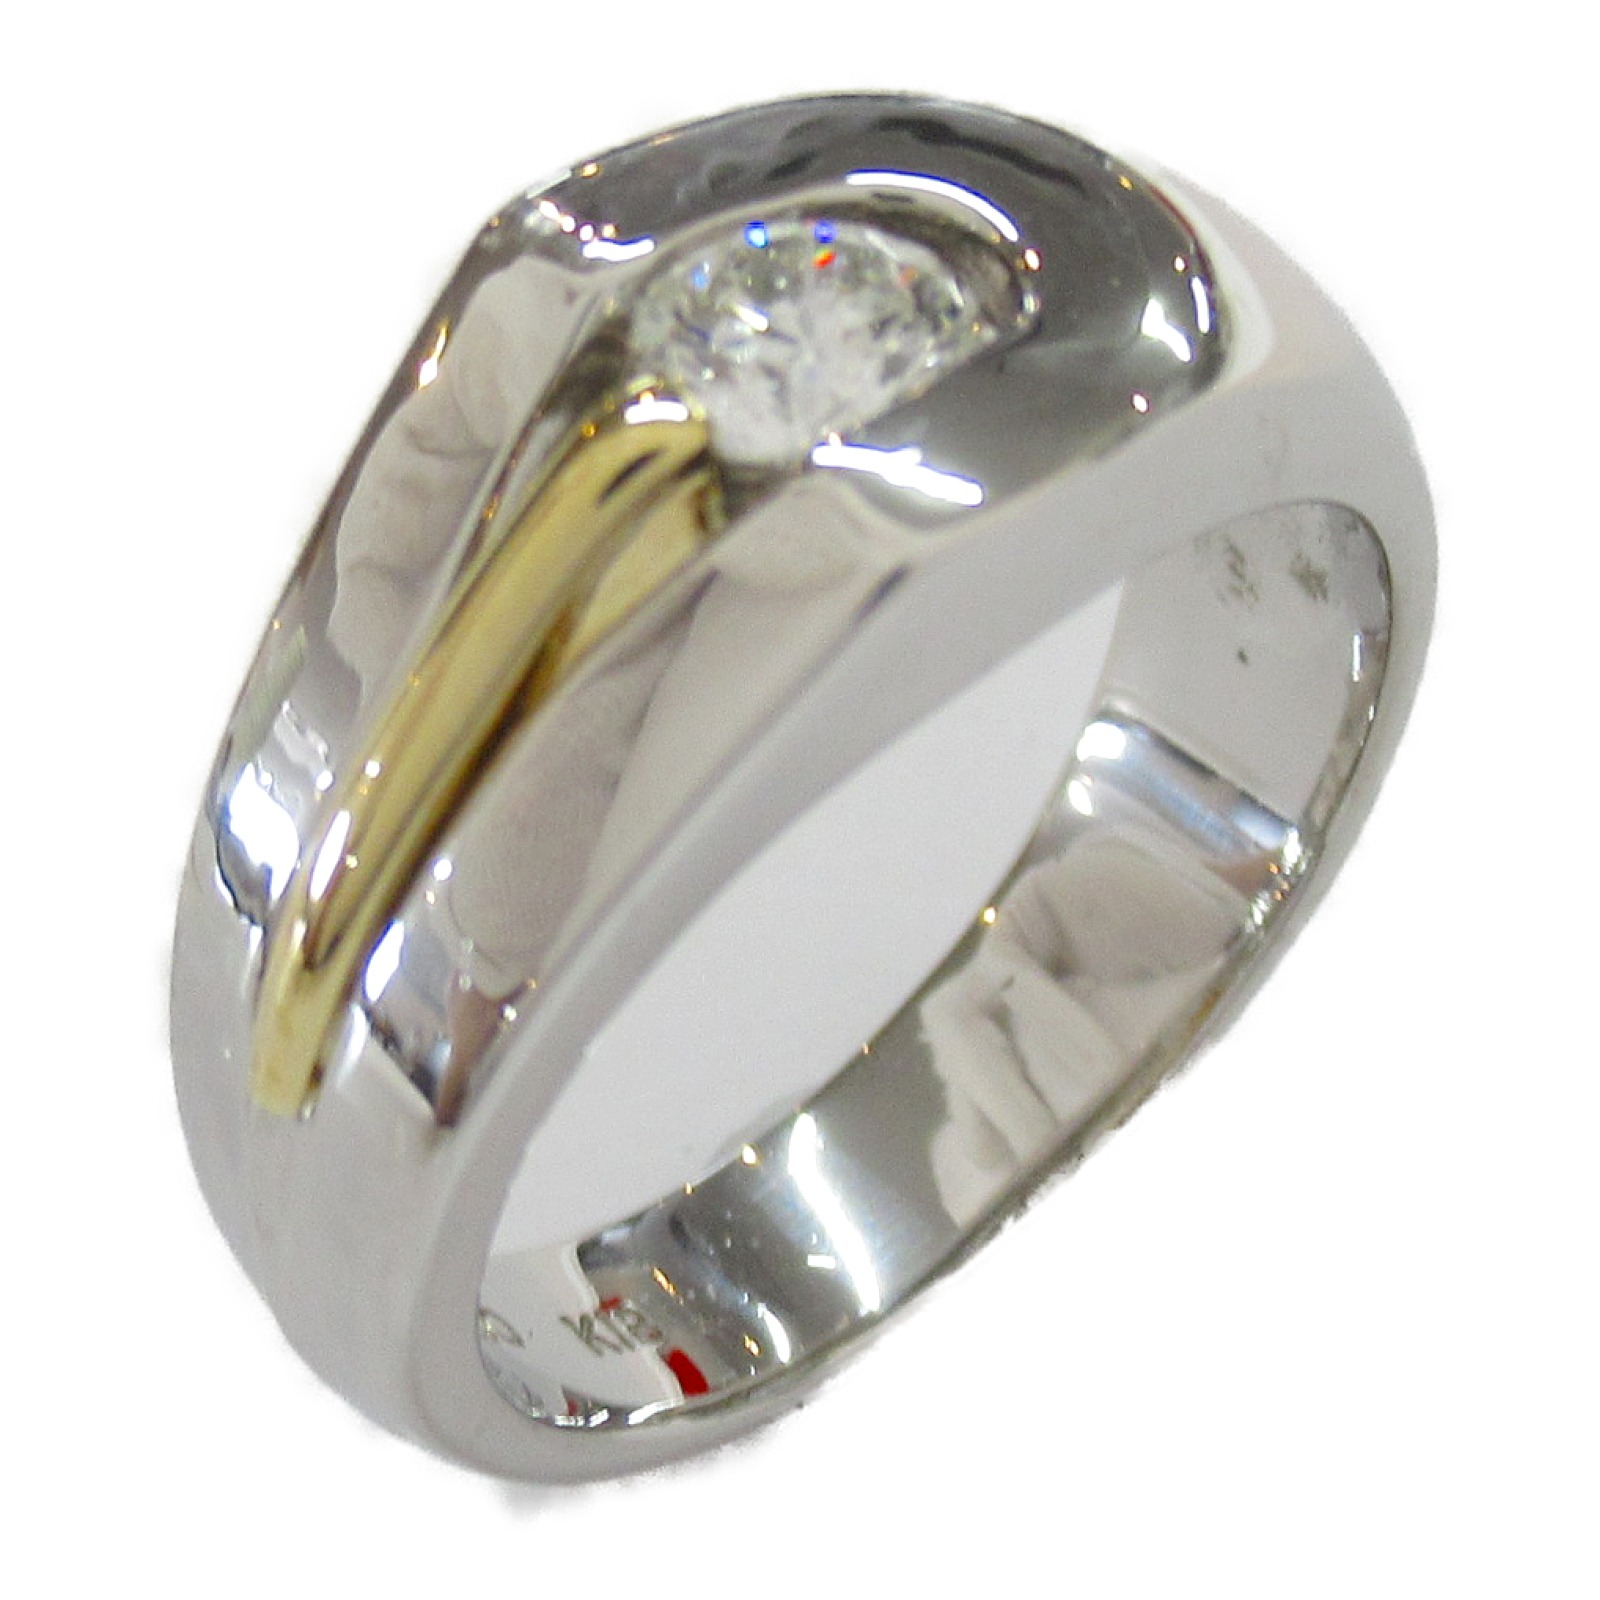 迅速な対応で商品をお届け致します ジュエリー JEWELRY ダイヤモンド リング 指輪 Pt900プラチナ K18 イエローゴールド メンズ レディース  クリア系 ダイヤ 12.6g アクセサリー fucoa.cl